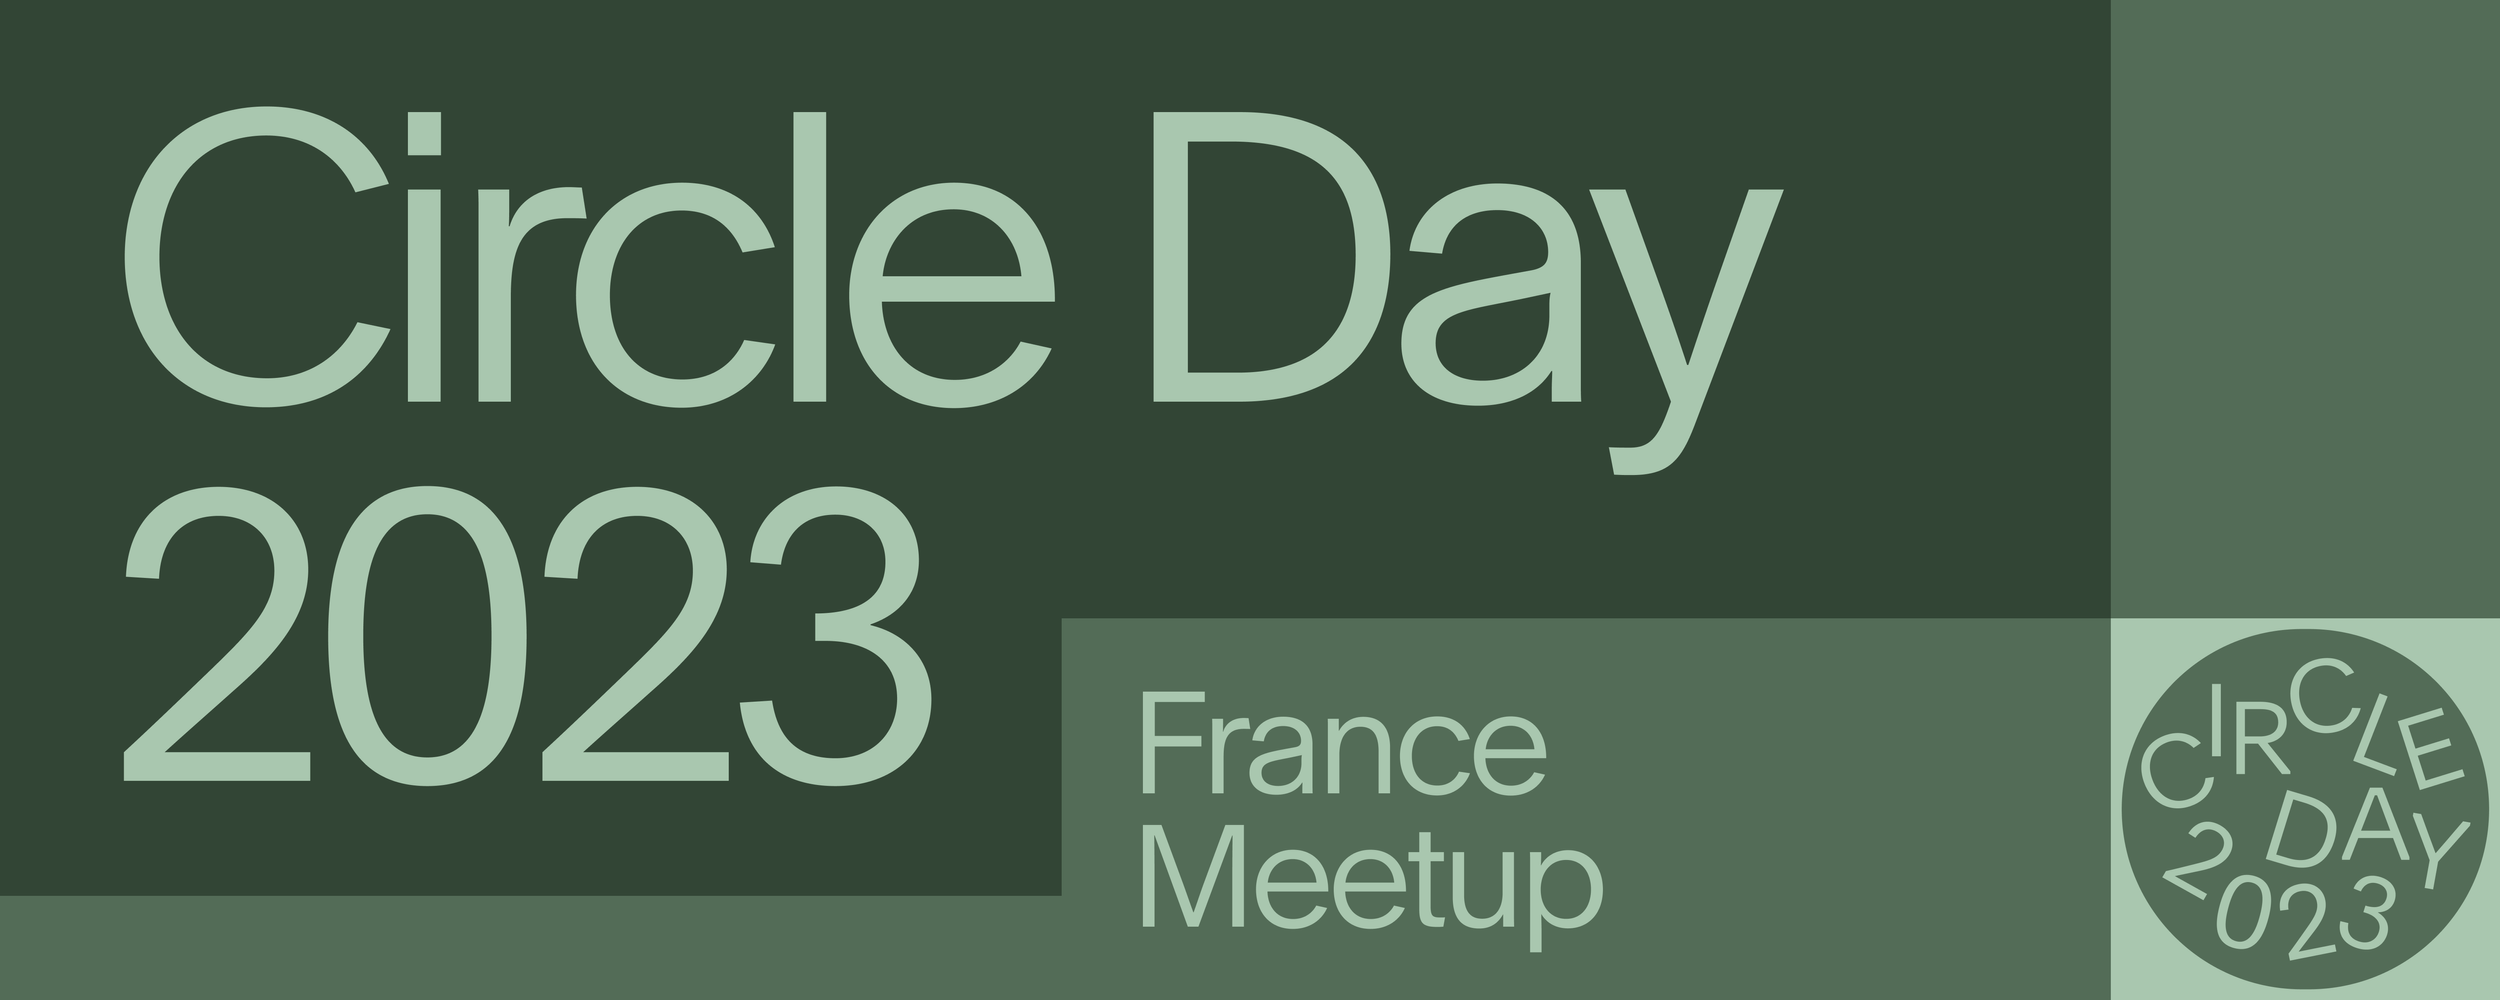 Circle Day: France Meetup